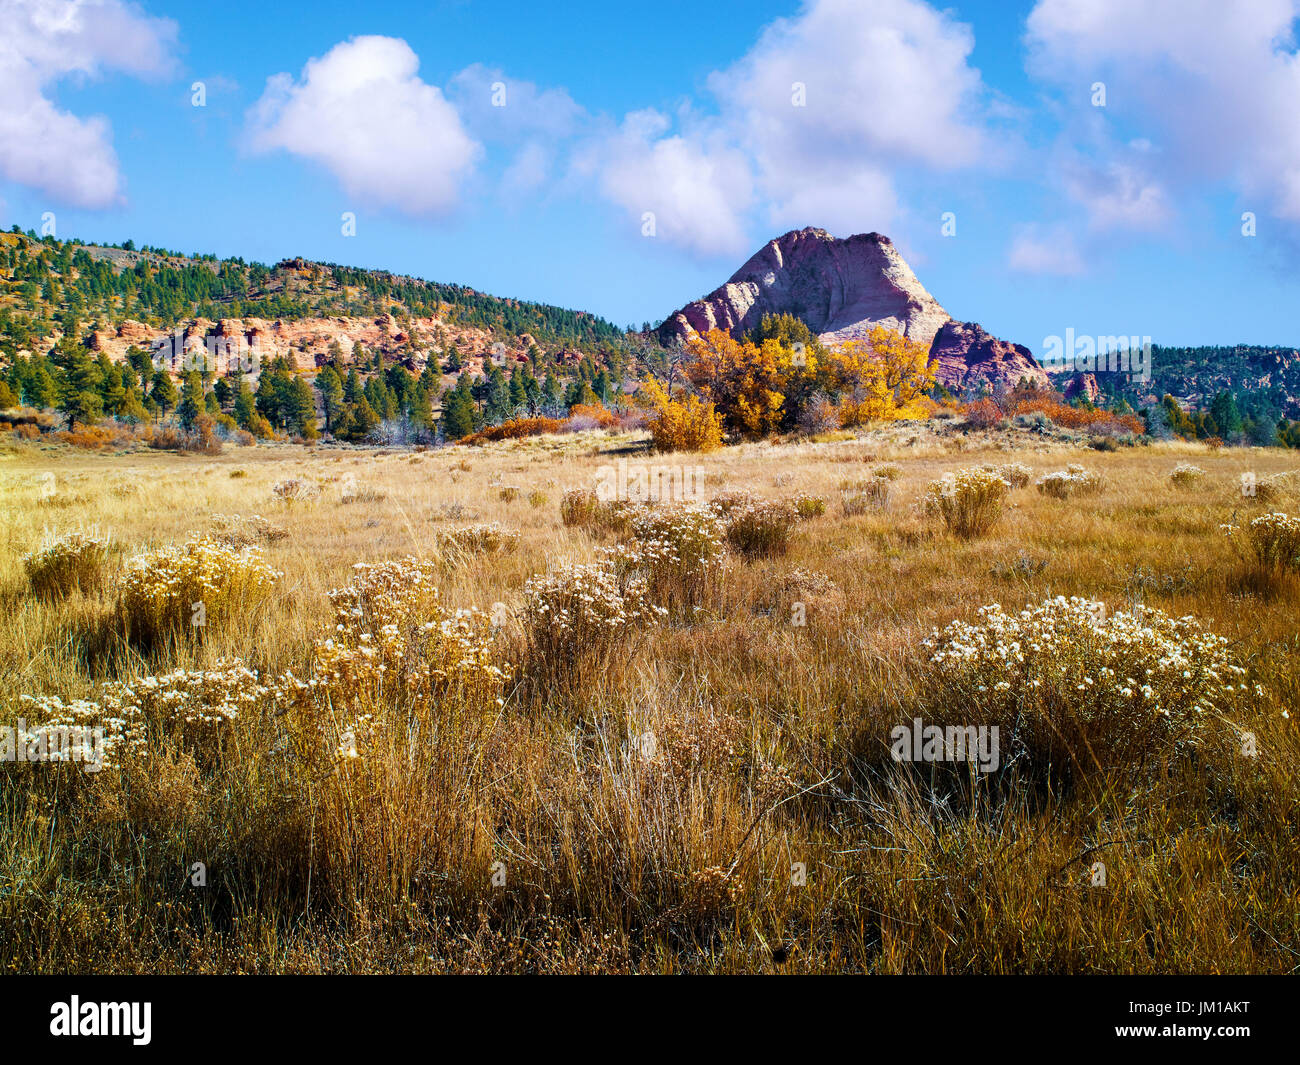 Une vue sur le paysage, kolob canyons, pendant la saison d'automne, près de Zion National Park, Utah, USA Banque D'Images